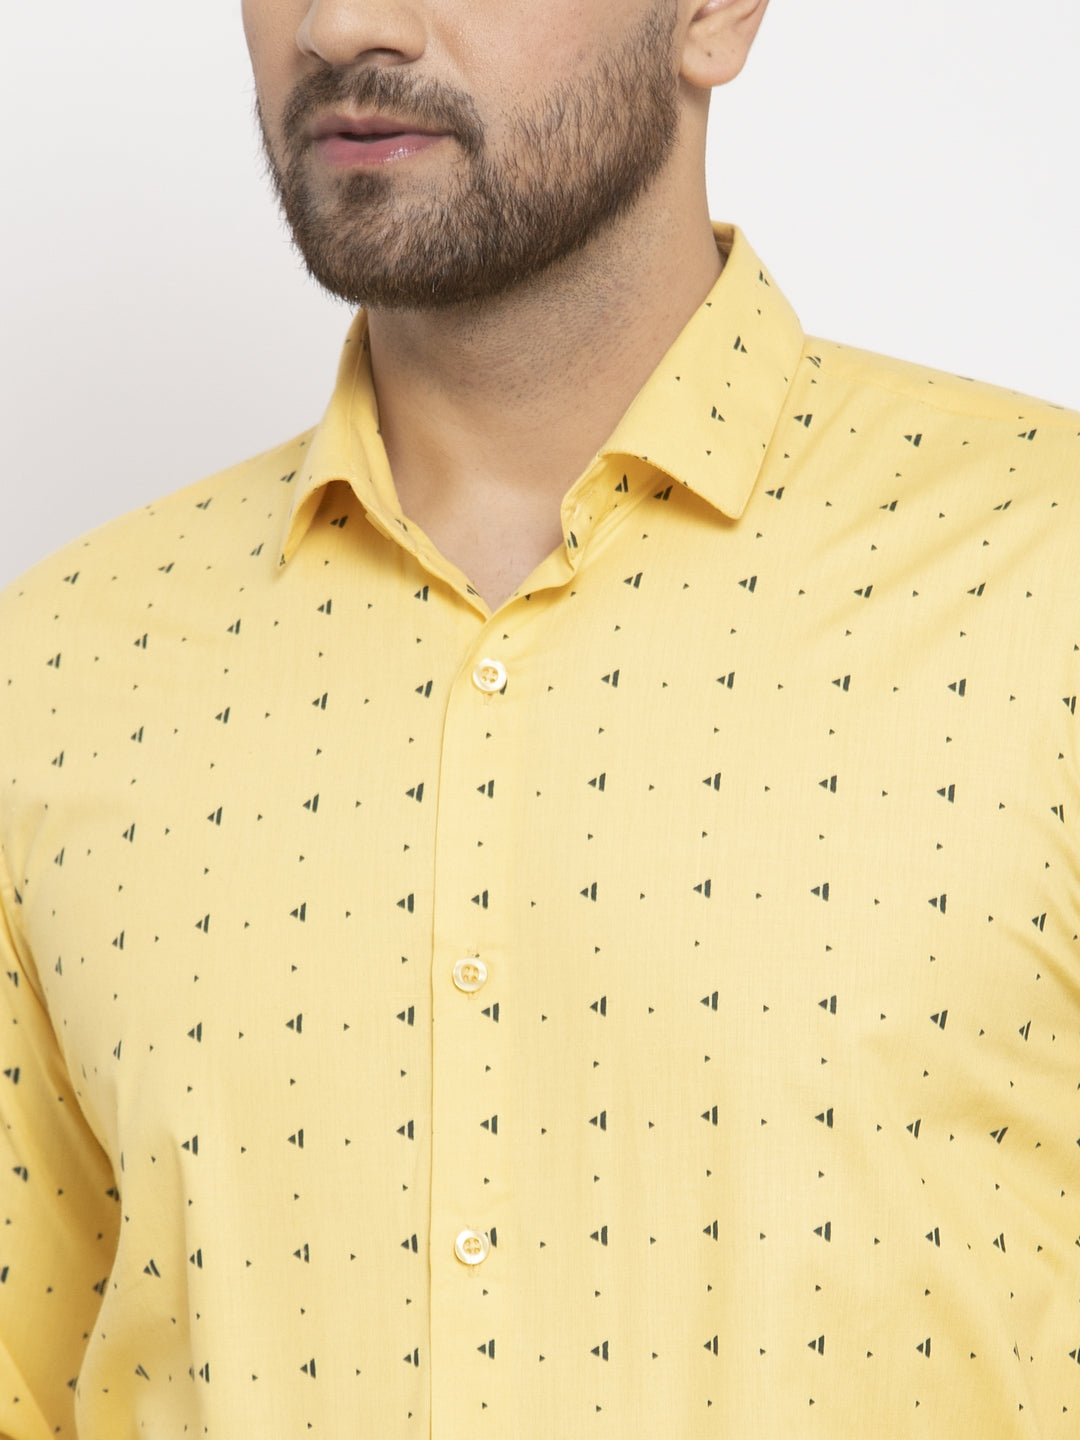 Men's Yellow Cotton Printed Formal Shirt's ( SF 766Yellow ) - Jainish